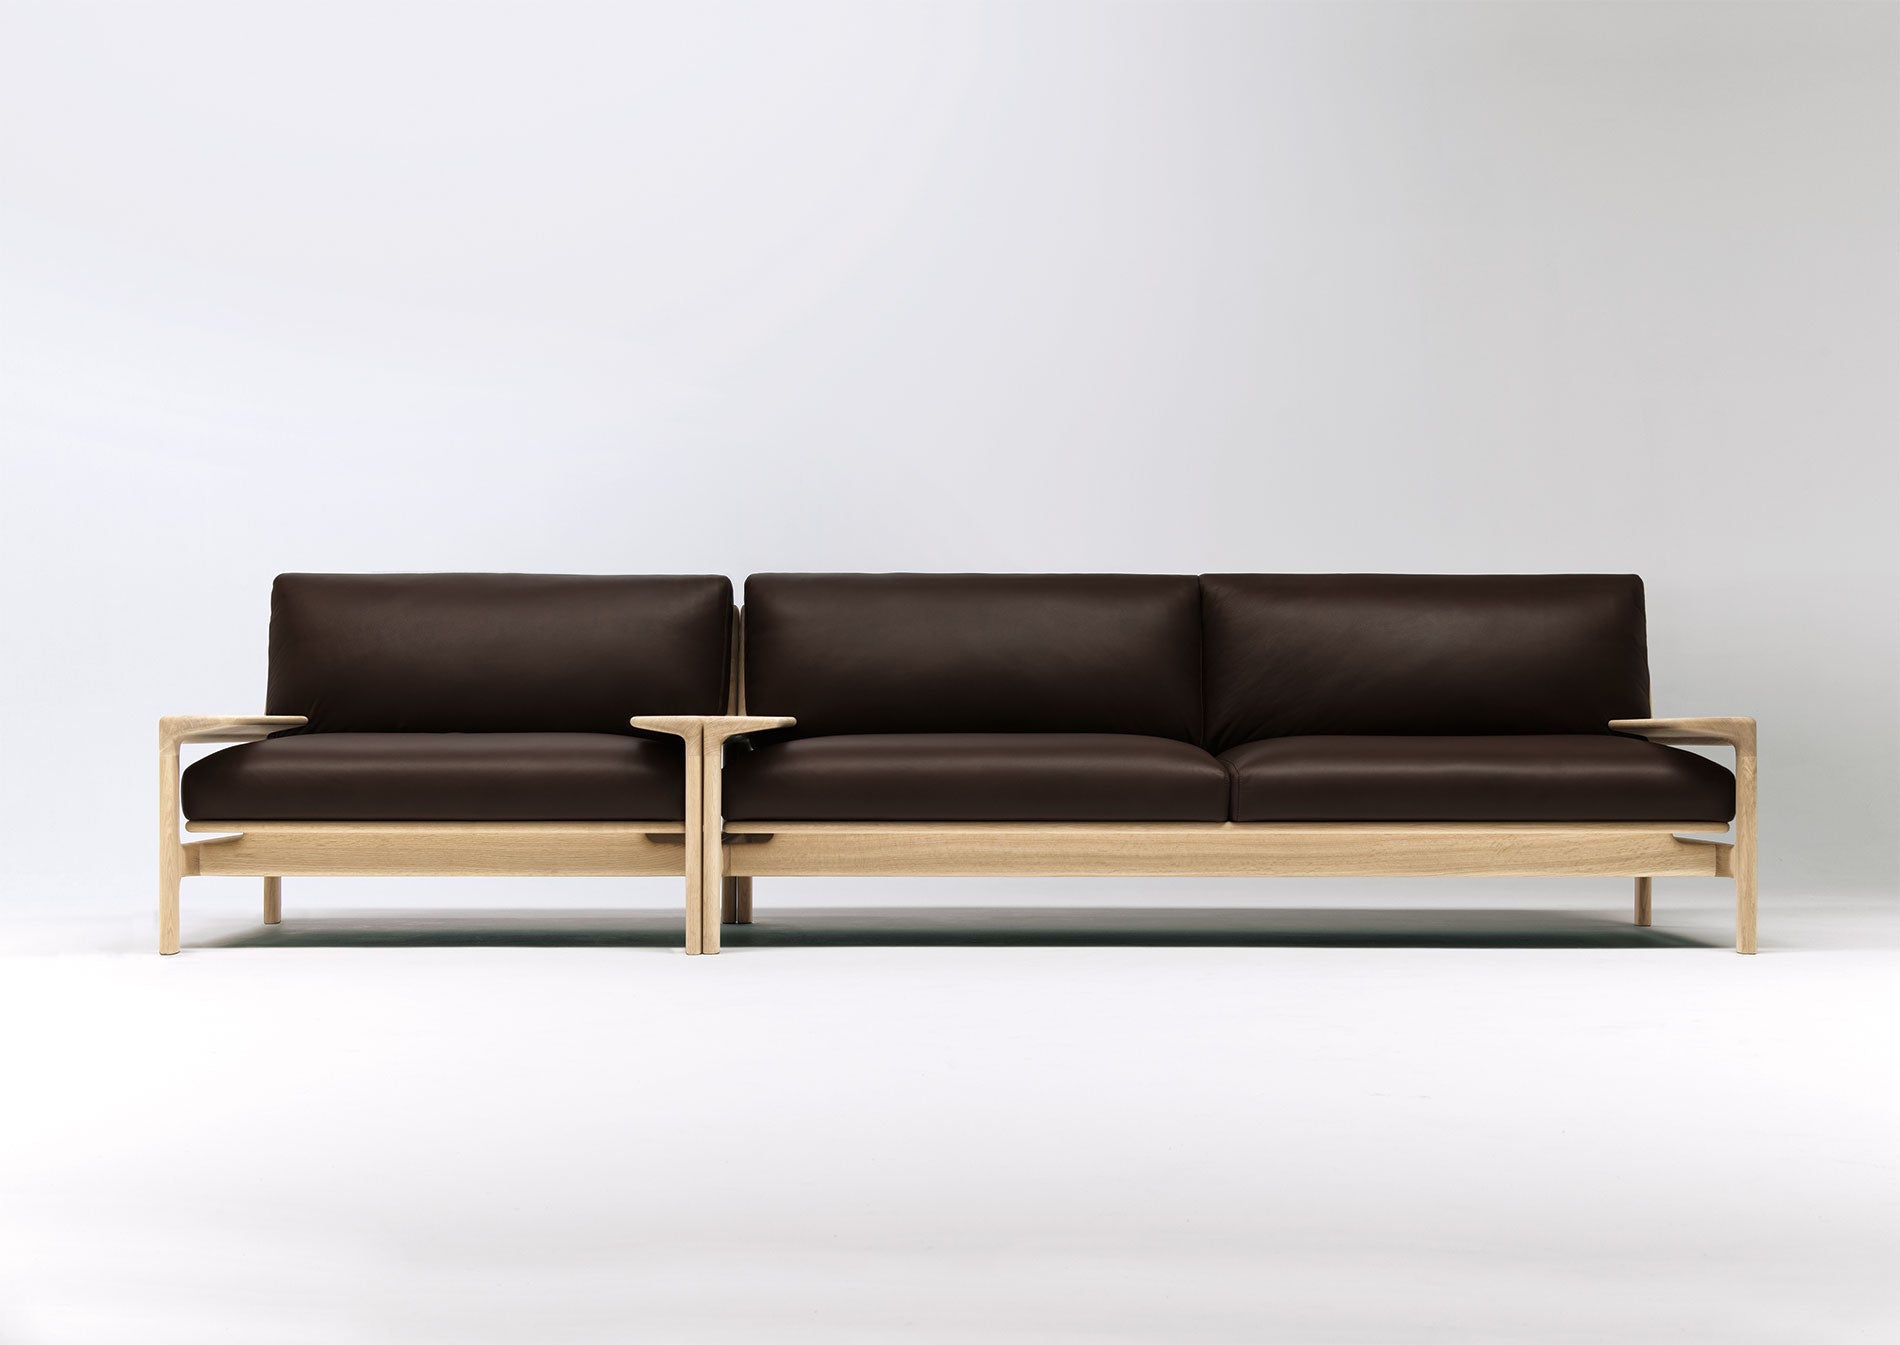 ソファーとアームチェアーを並べると3mほどの贅沢なソファーに。肘がテーブルのように使えるのも魅力です。